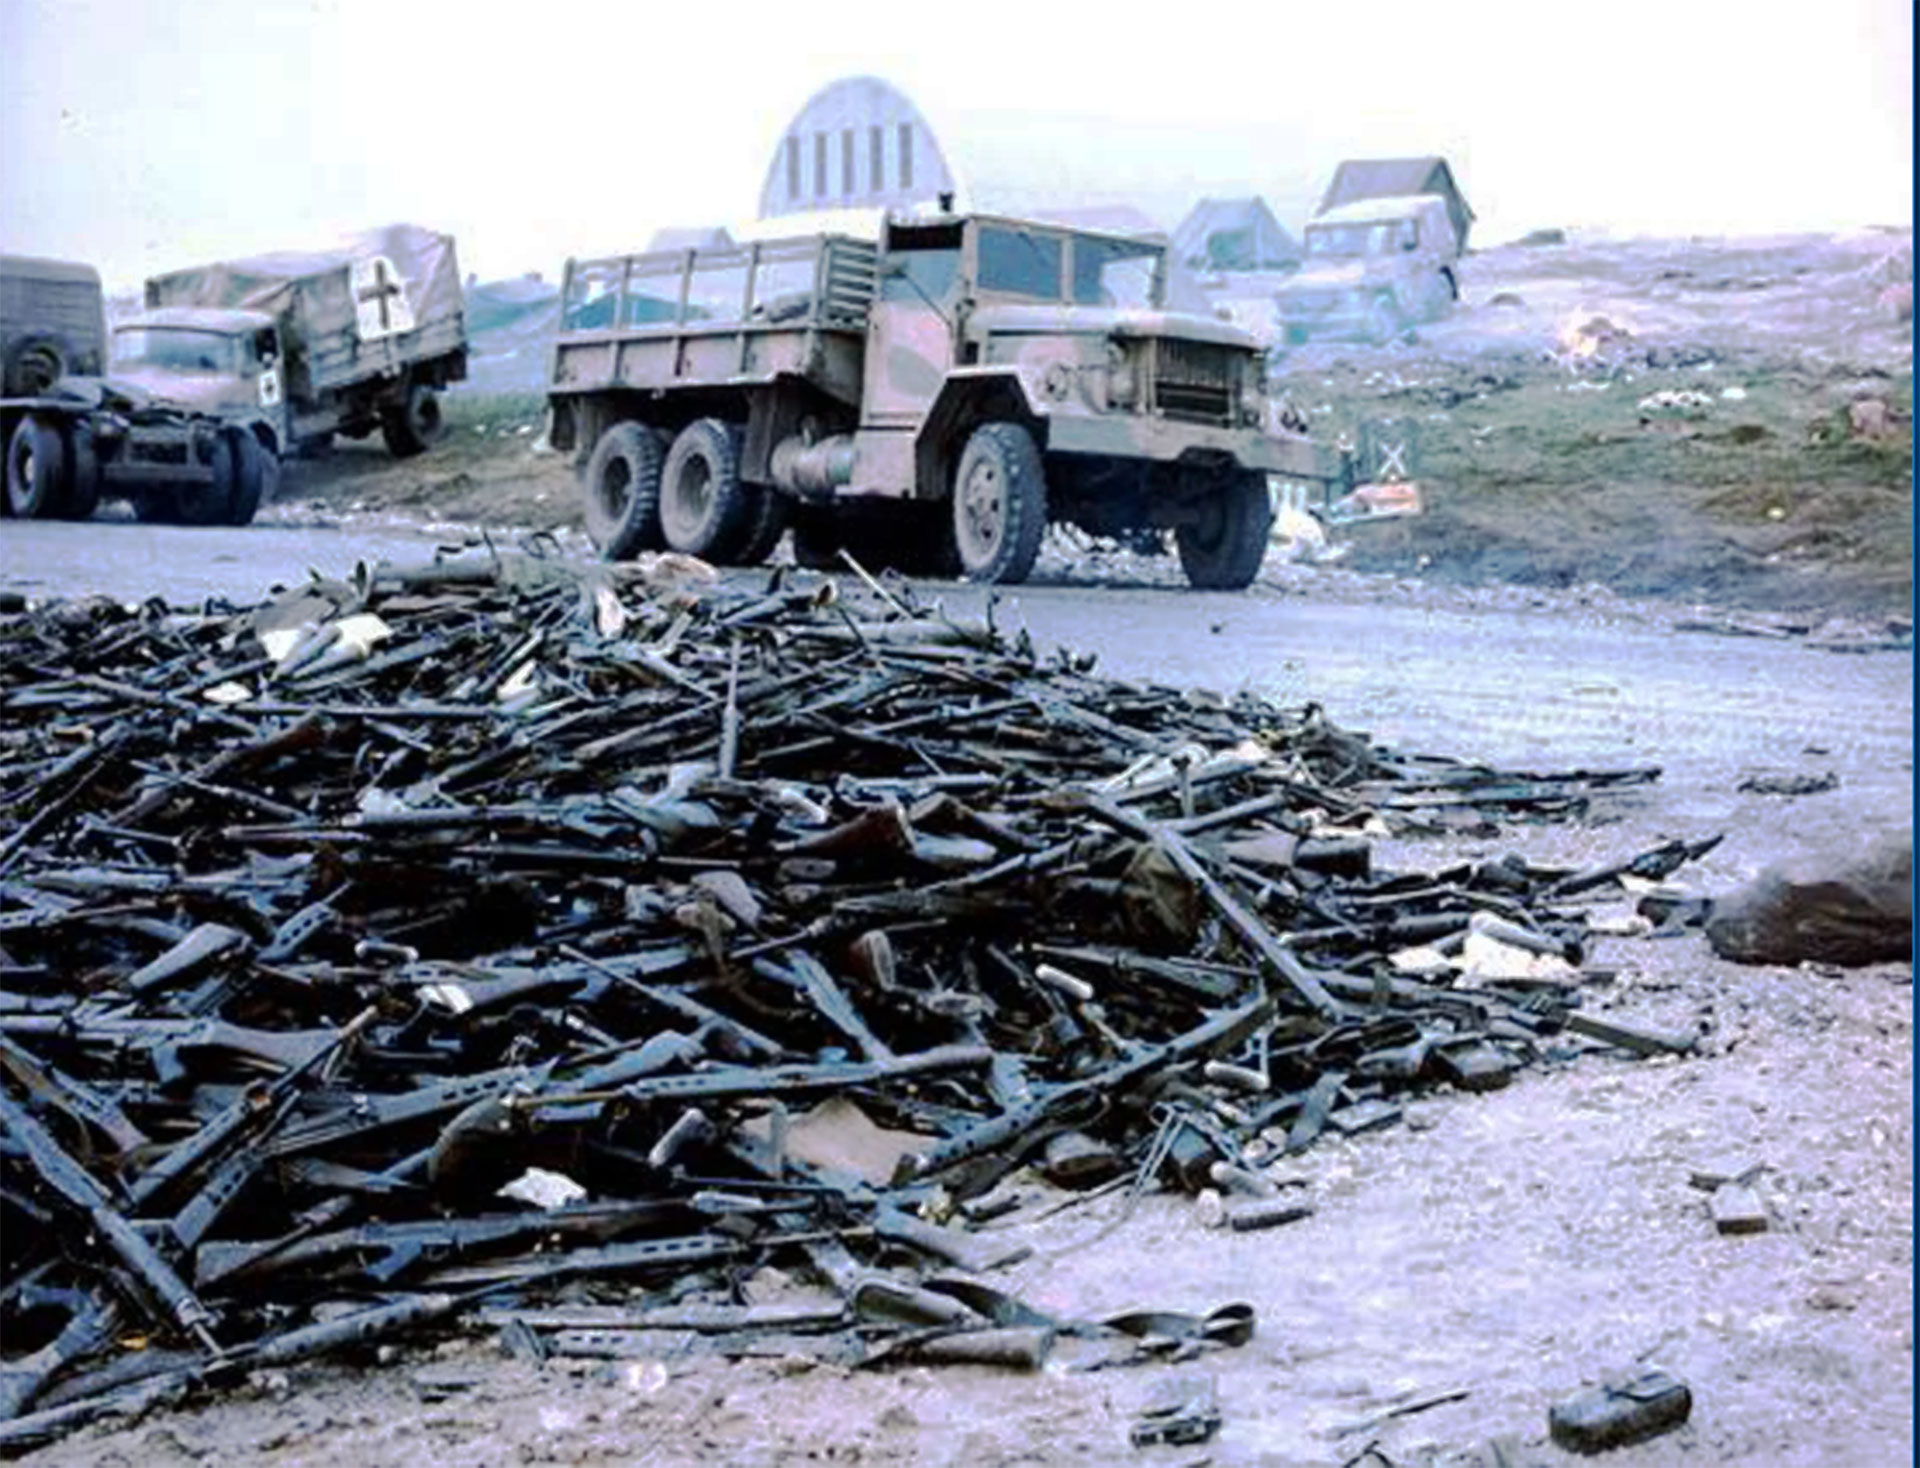 Montañas de armas abandonadas por los soldados argentinos luego de la rendición en Puerto Argentino